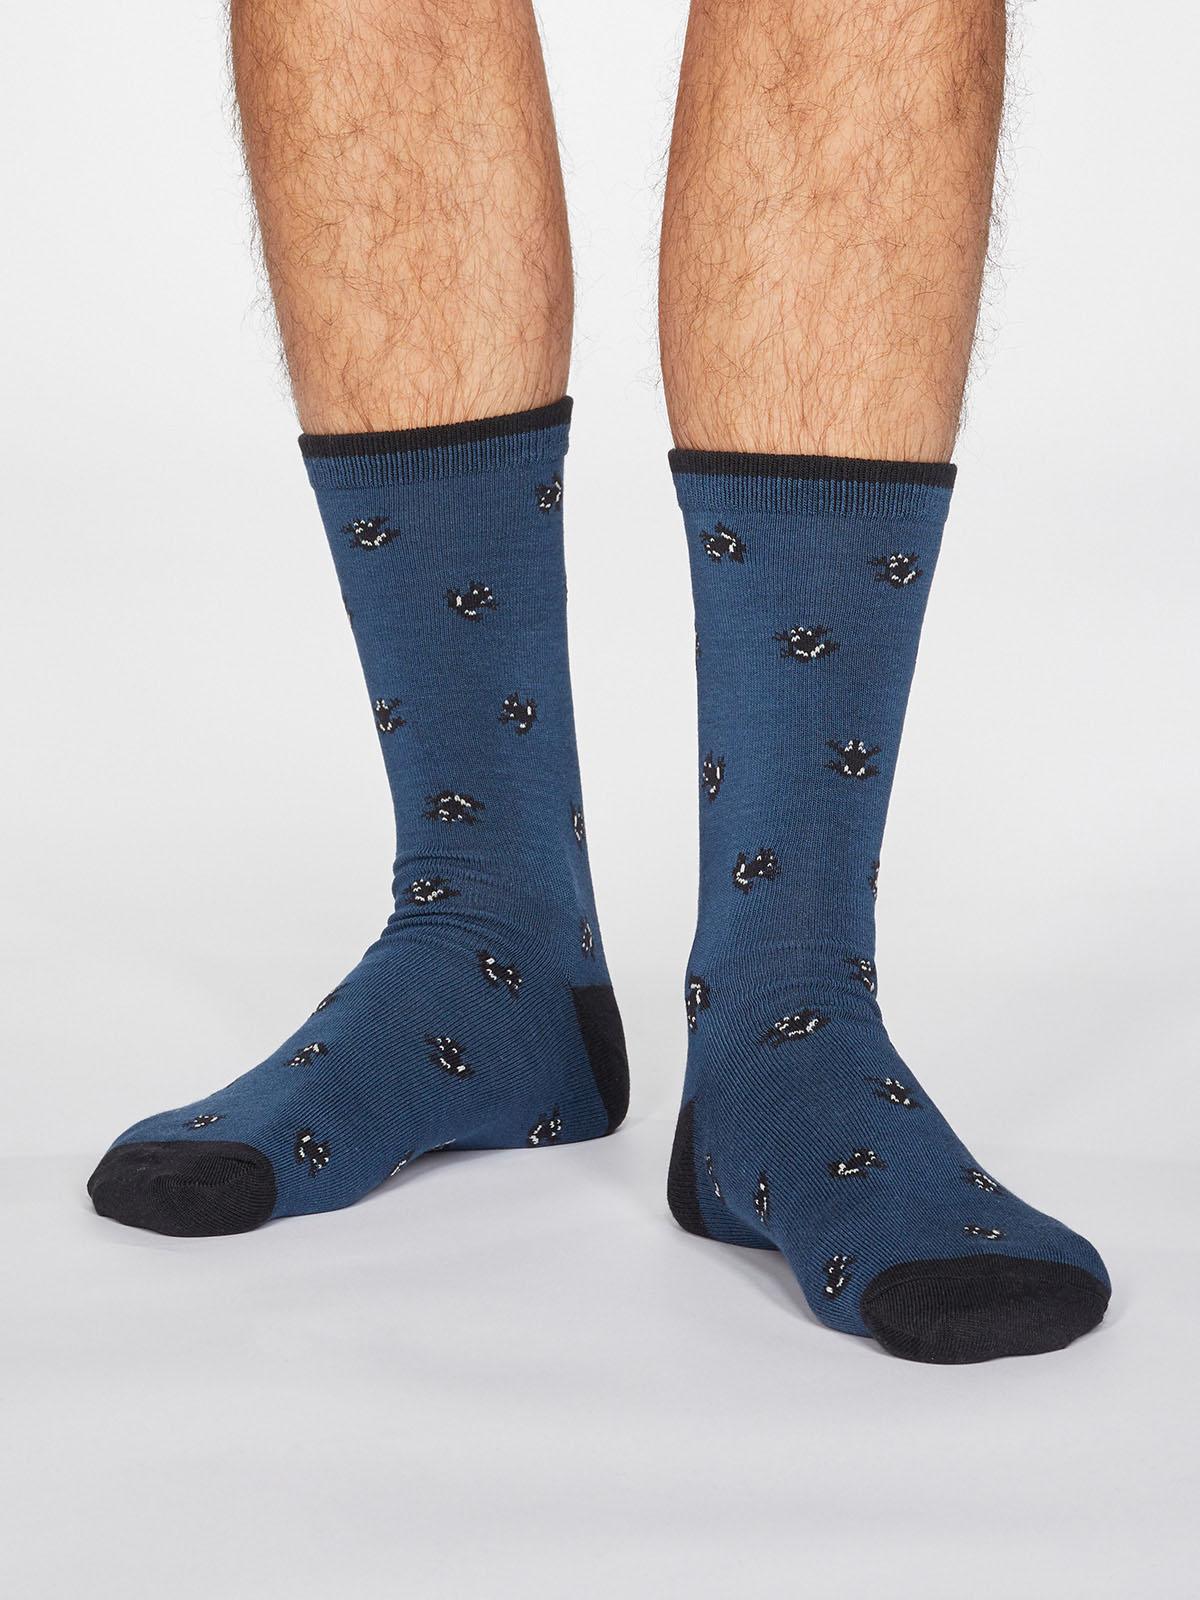 Wesley Frog Socks - Denim Blue - Thought Clothing UK